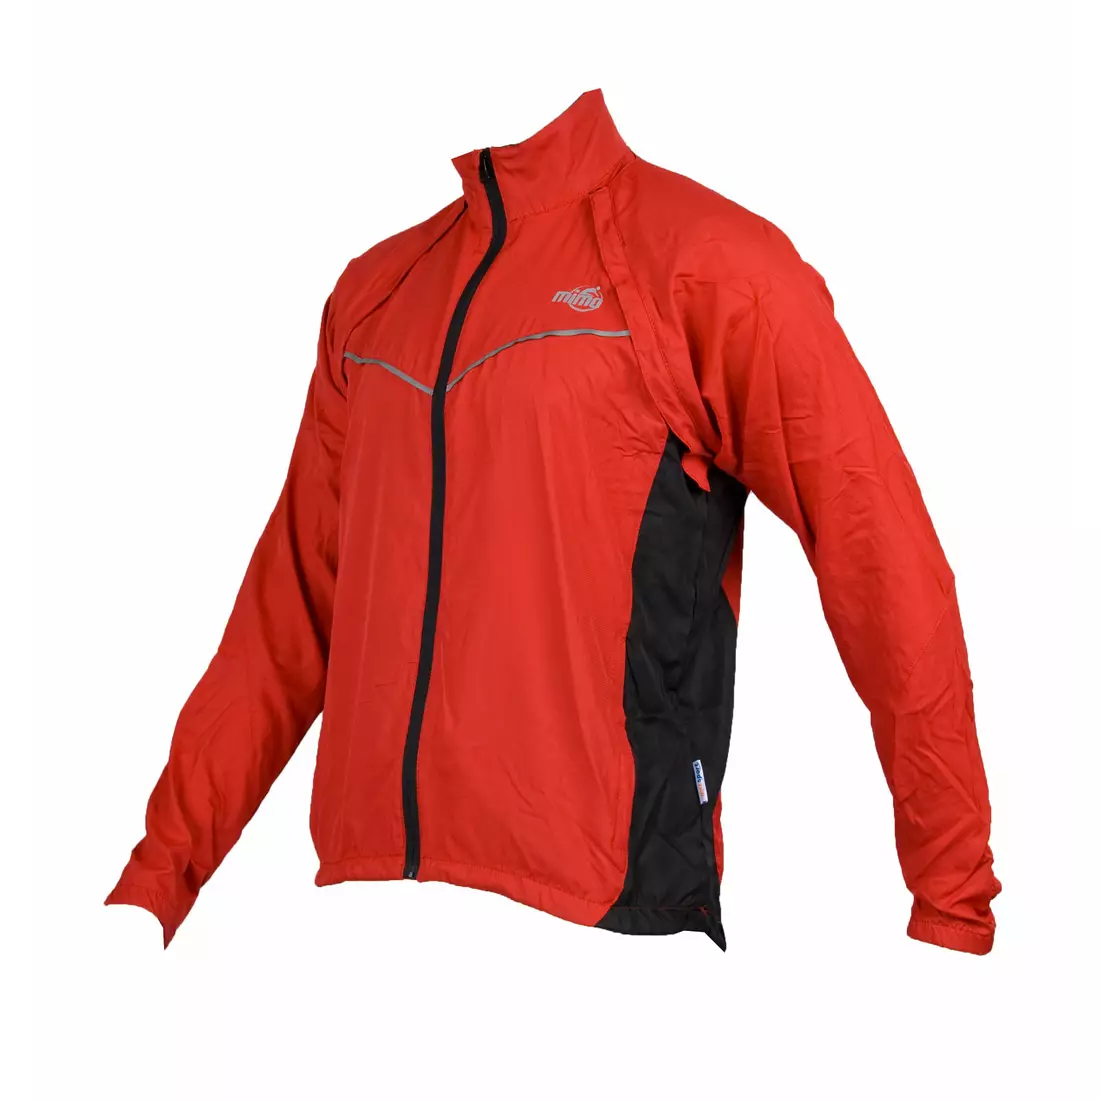 MikeSPORT SWORD - cyklistická bunda, odepínací rukávy, červená